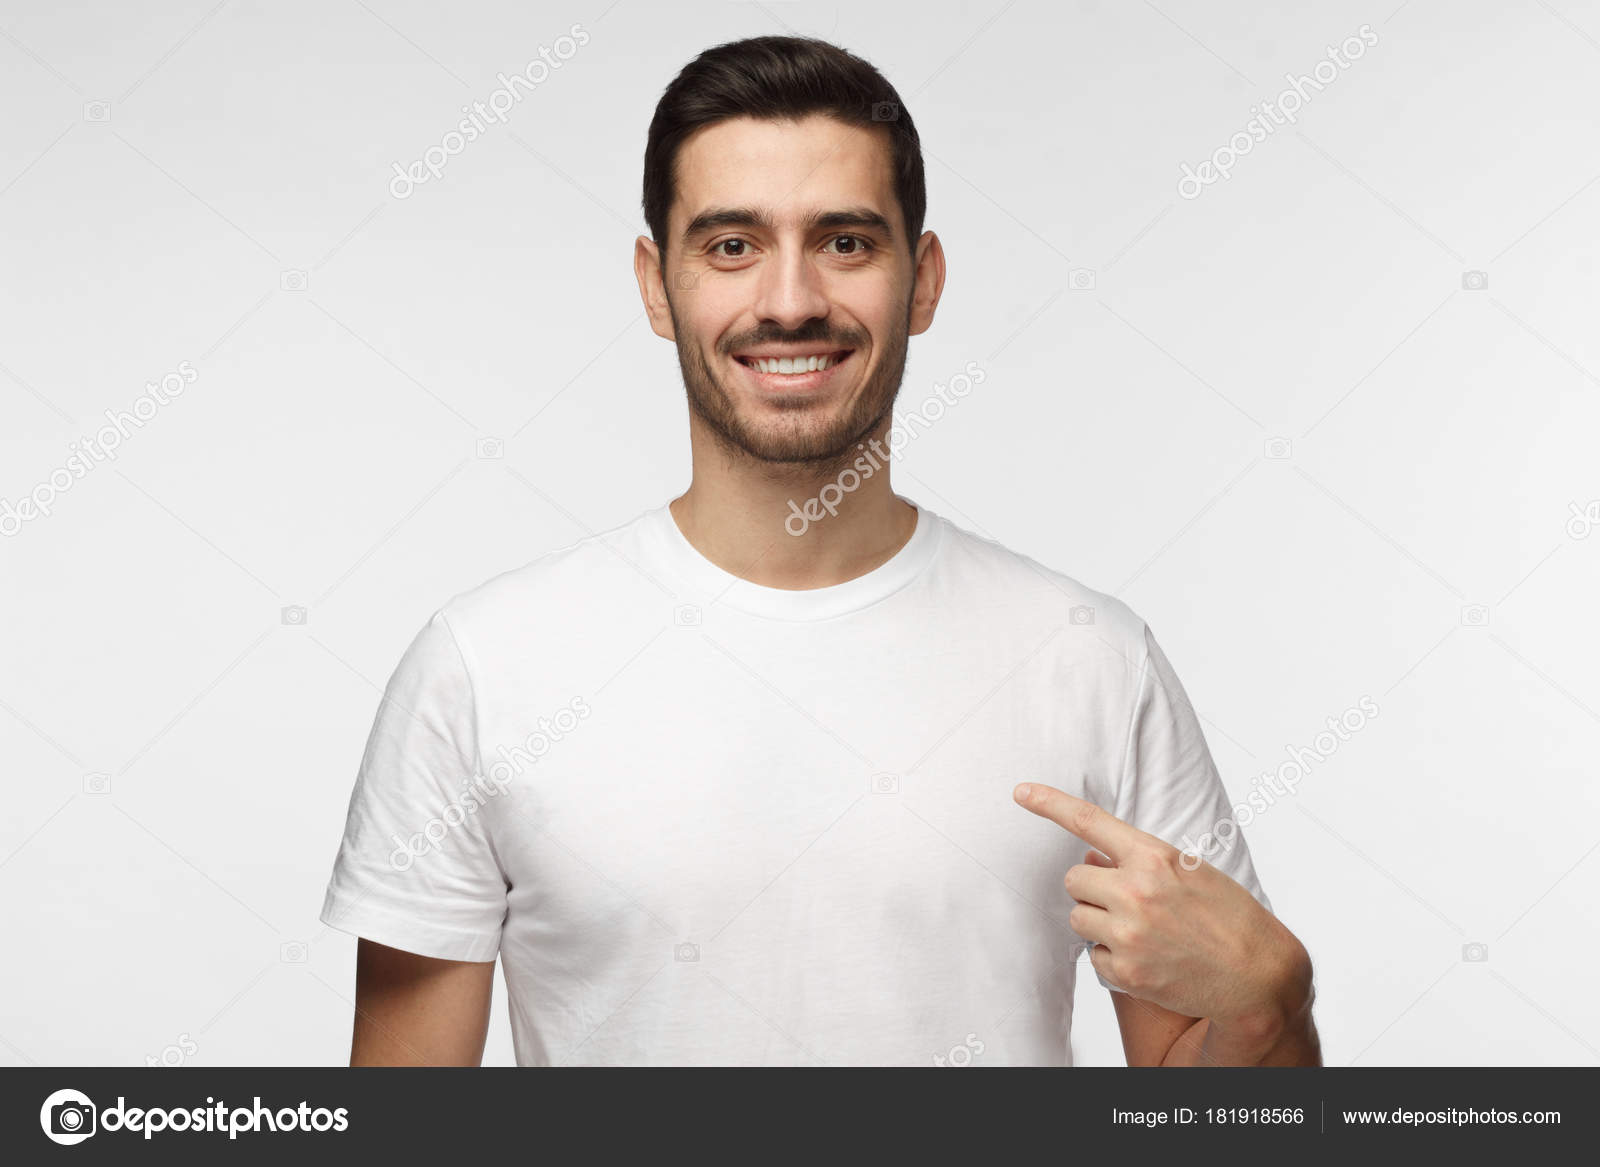 Diseño de camisetas y concepto de publicidad: un niño sonriente con una camiseta  blanca en blanco apuntándose a sí misma